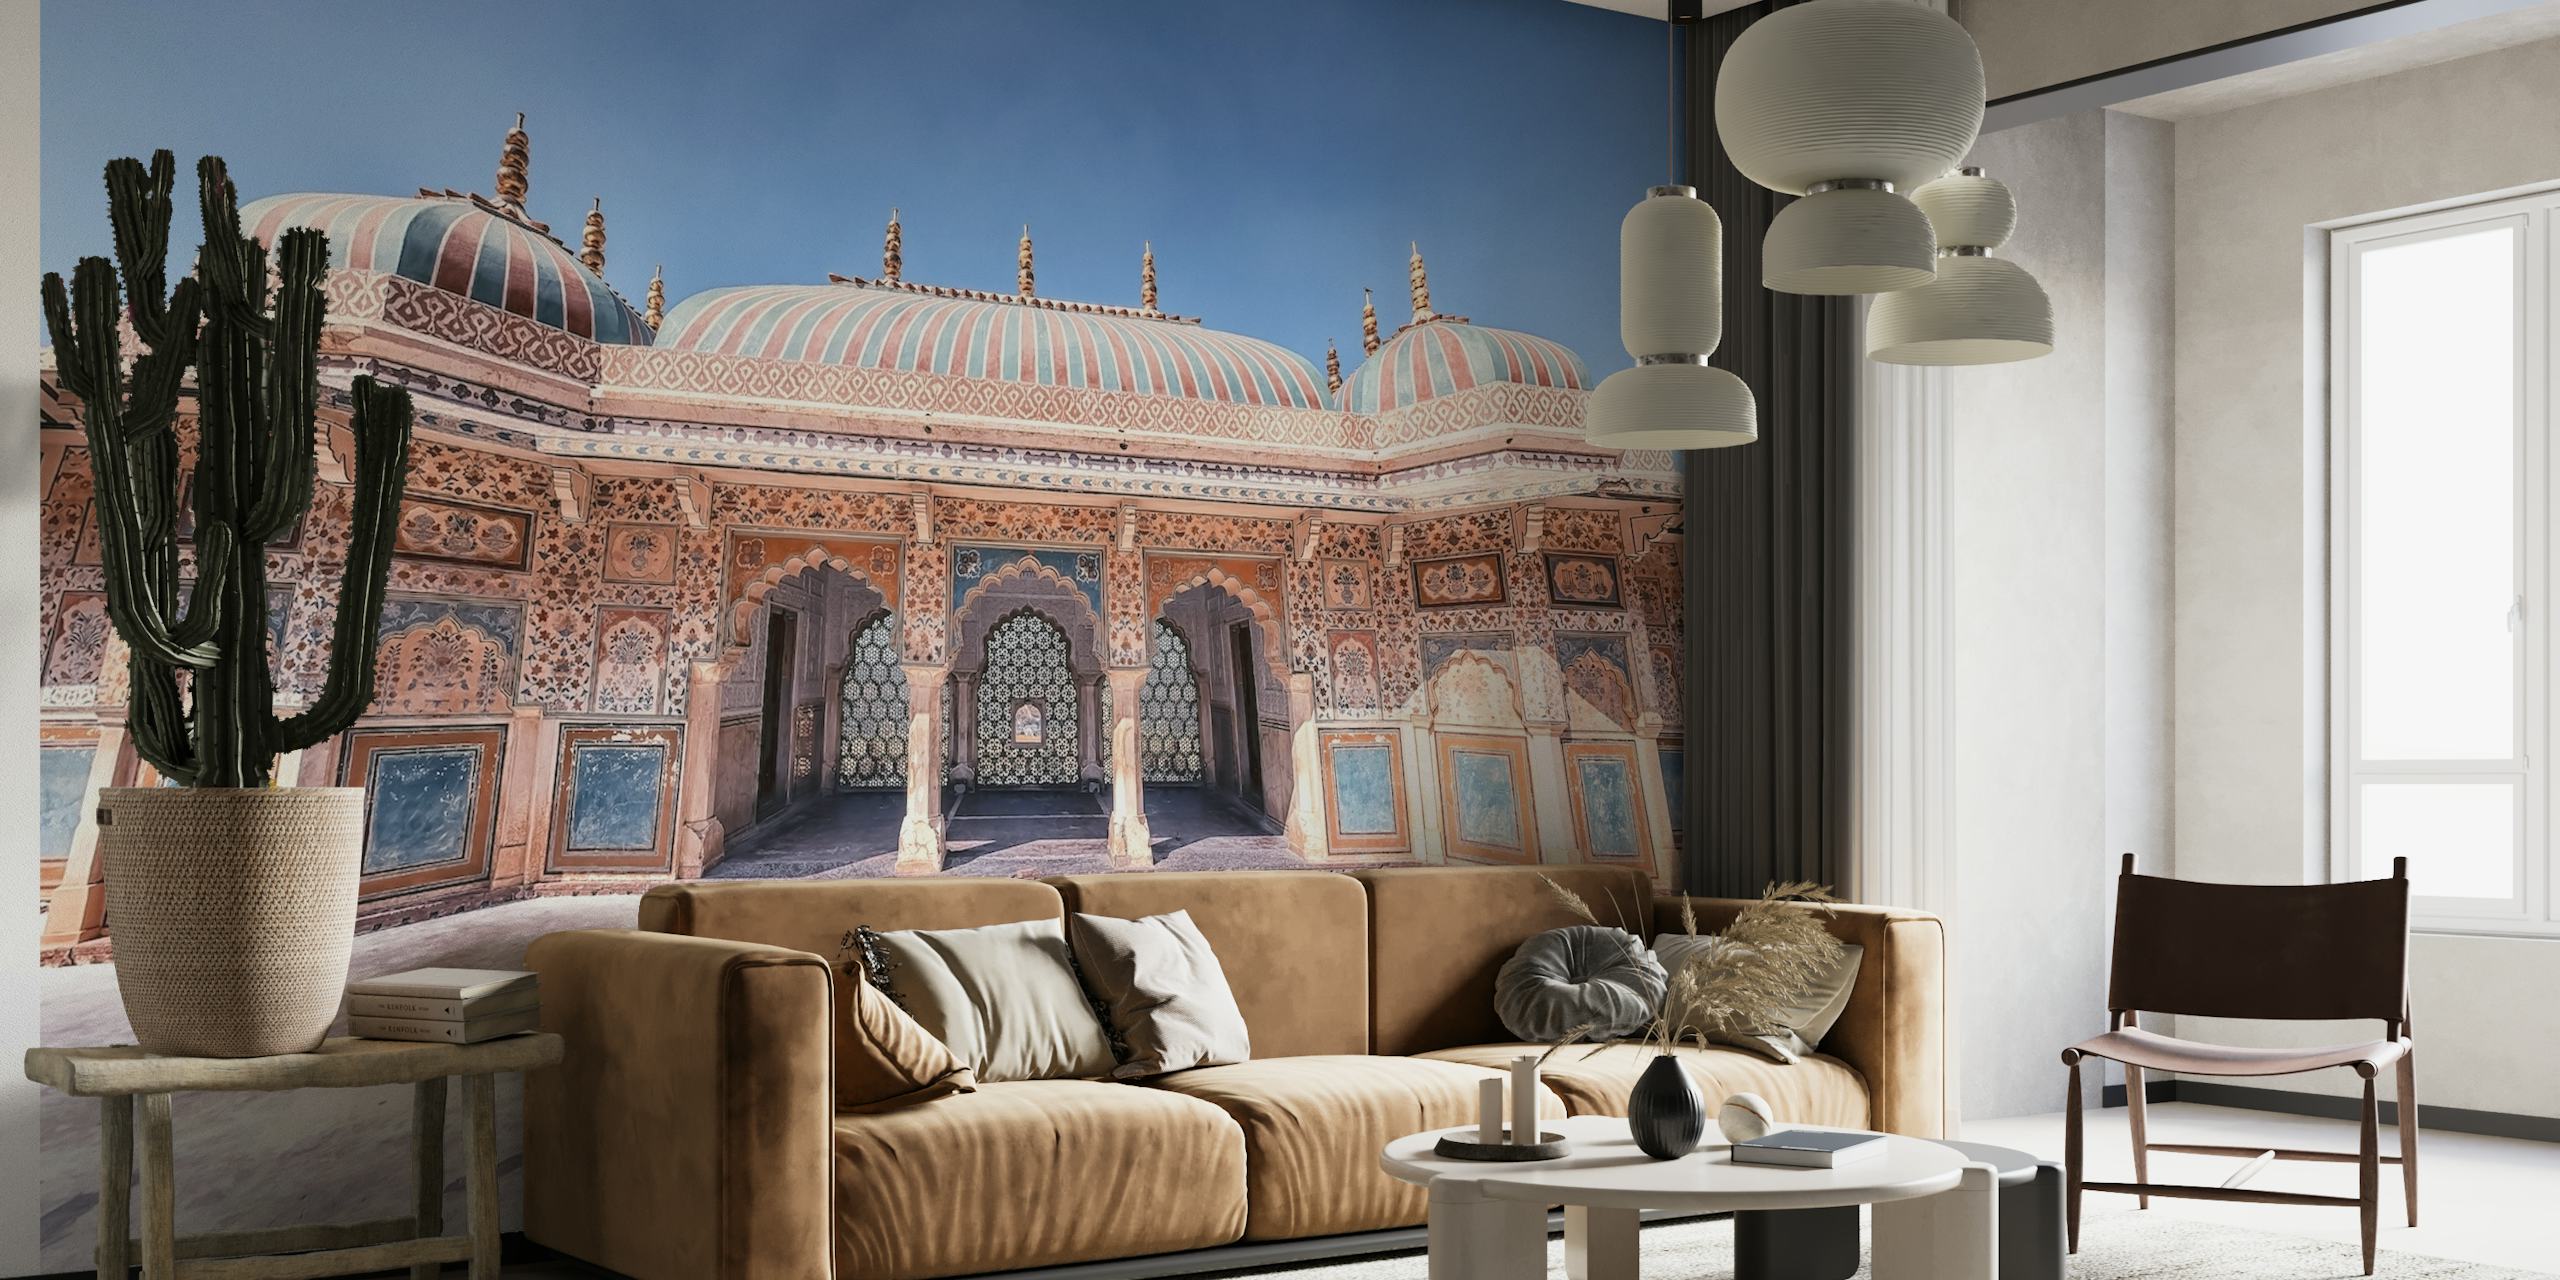 Murale del Forte Amber raffigurante la maestosa architettura indiana e gli intricati dettagli del palazzo